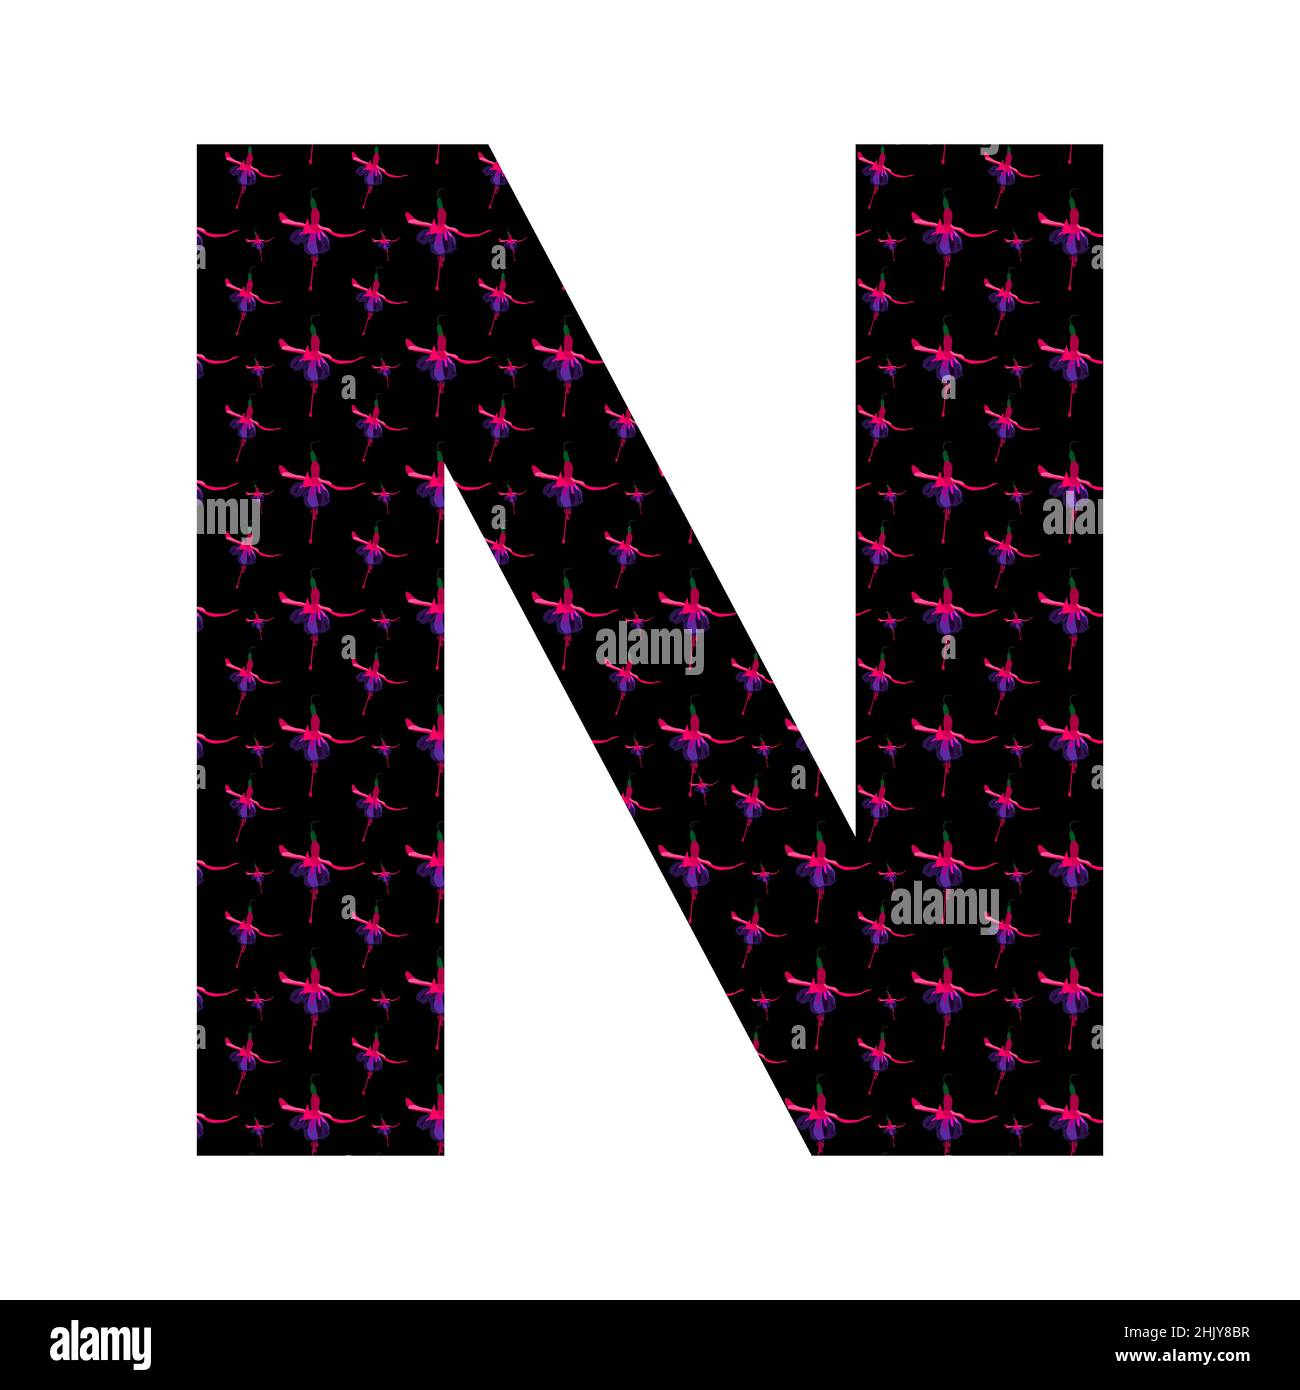 Buchstabe N des Alphabets mit einem Muster aus rosa Fuchsia-Blüten auf schwarzem Hintergrund, isoliert auf weißem Hintergrund, Vektor Stock Vektor